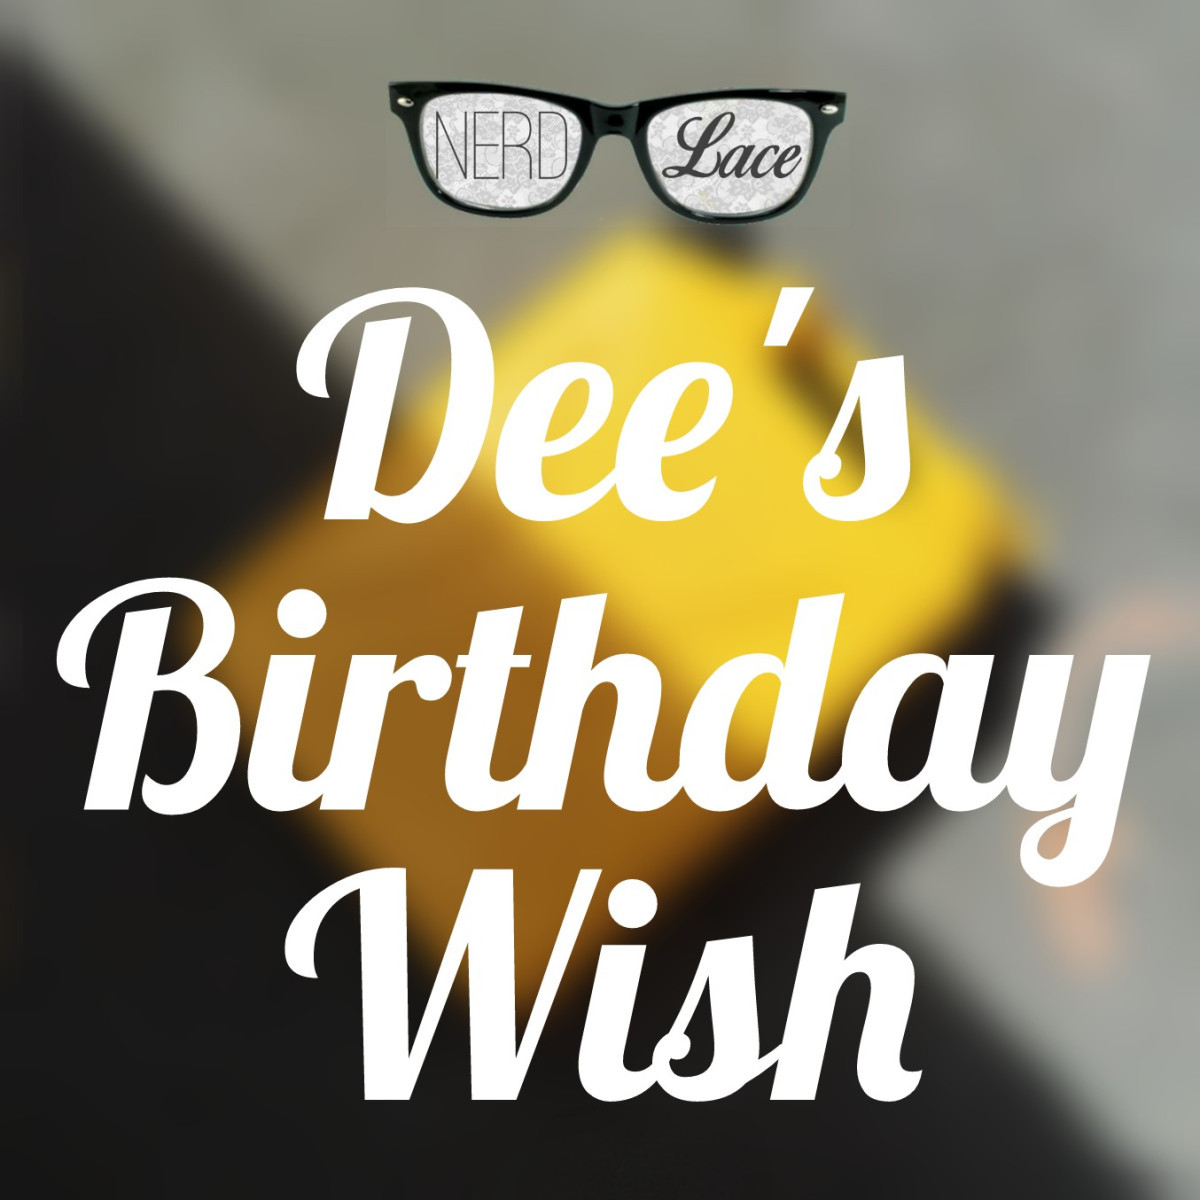 Birthday Wishes Charity
 Charity Water Dee’s Birthday Wish – Nerd & Lace